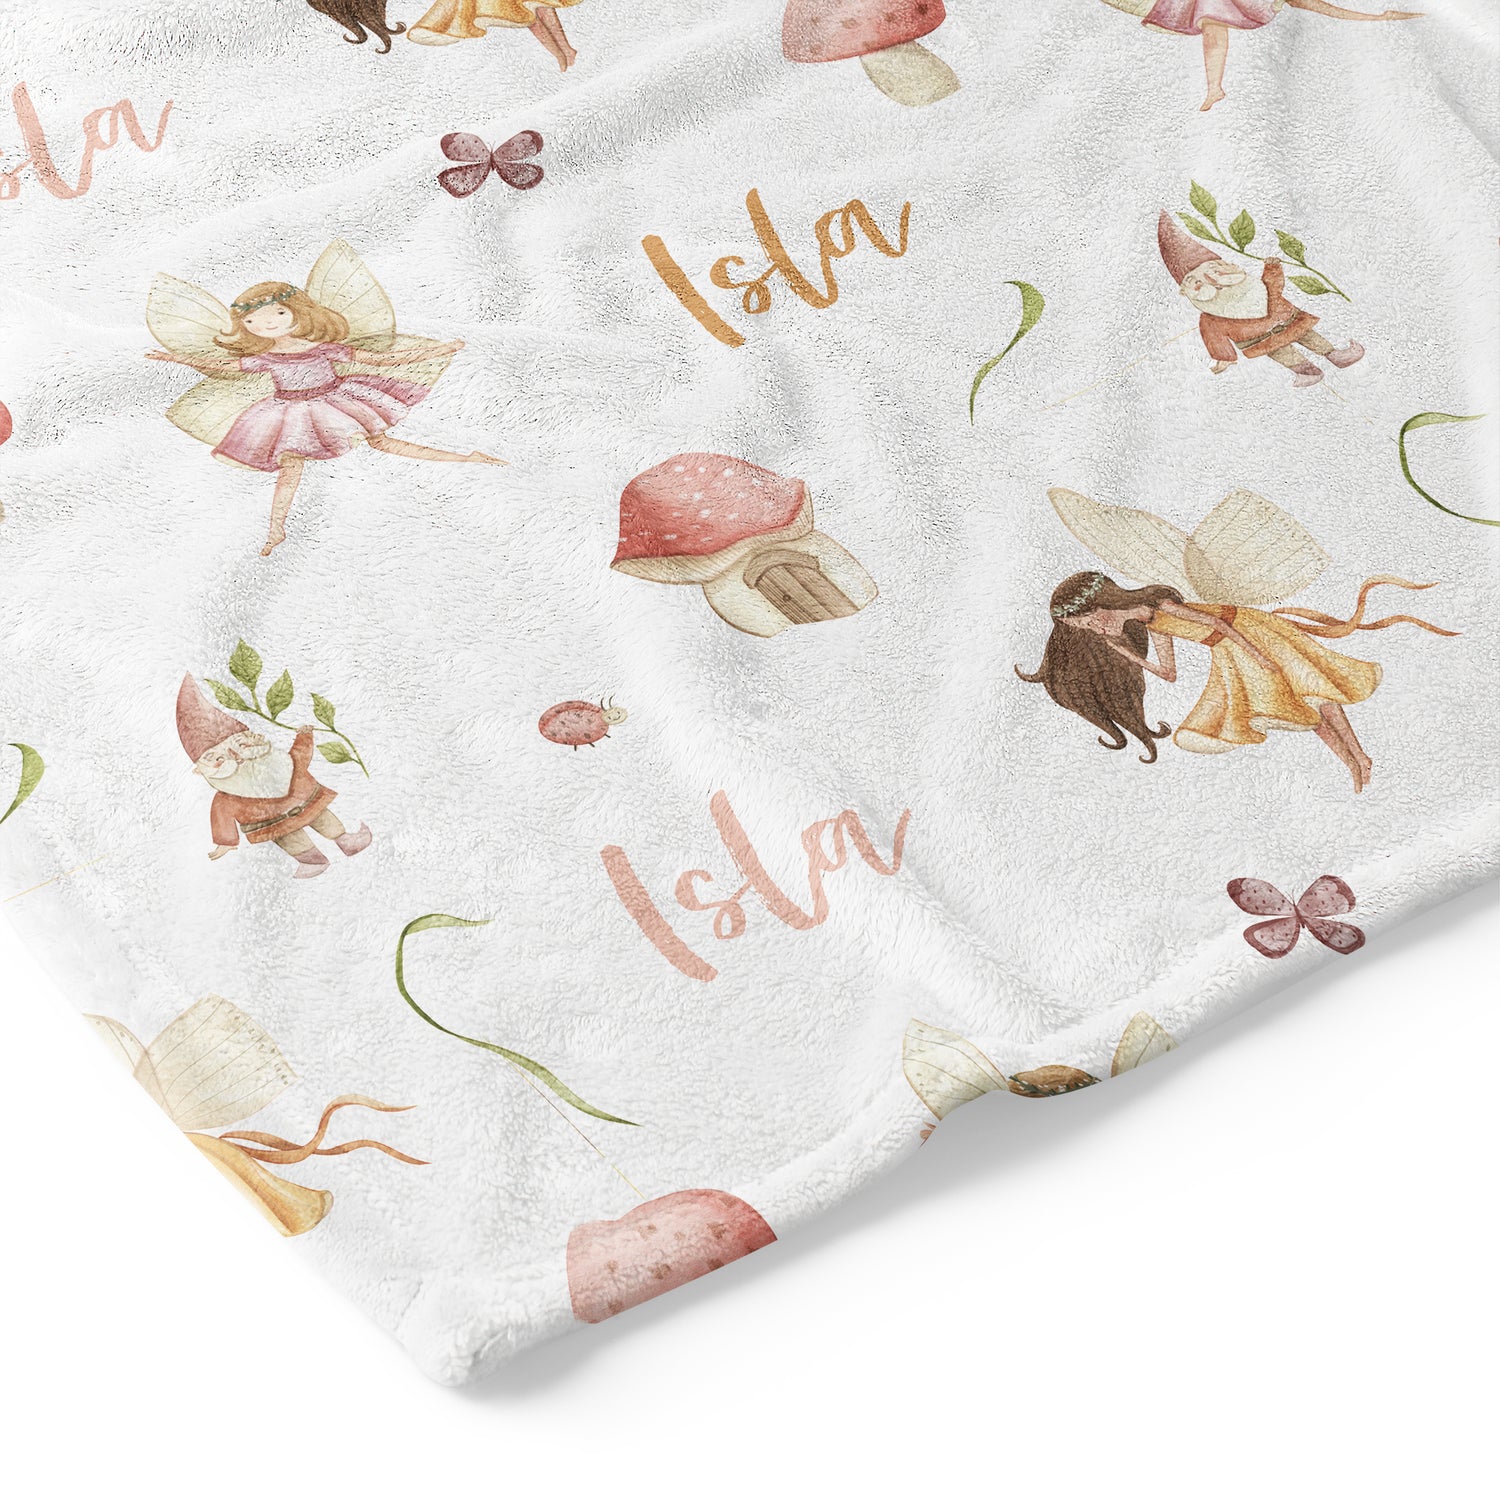 Fairy Garden - Personalised Keepsake Blanket